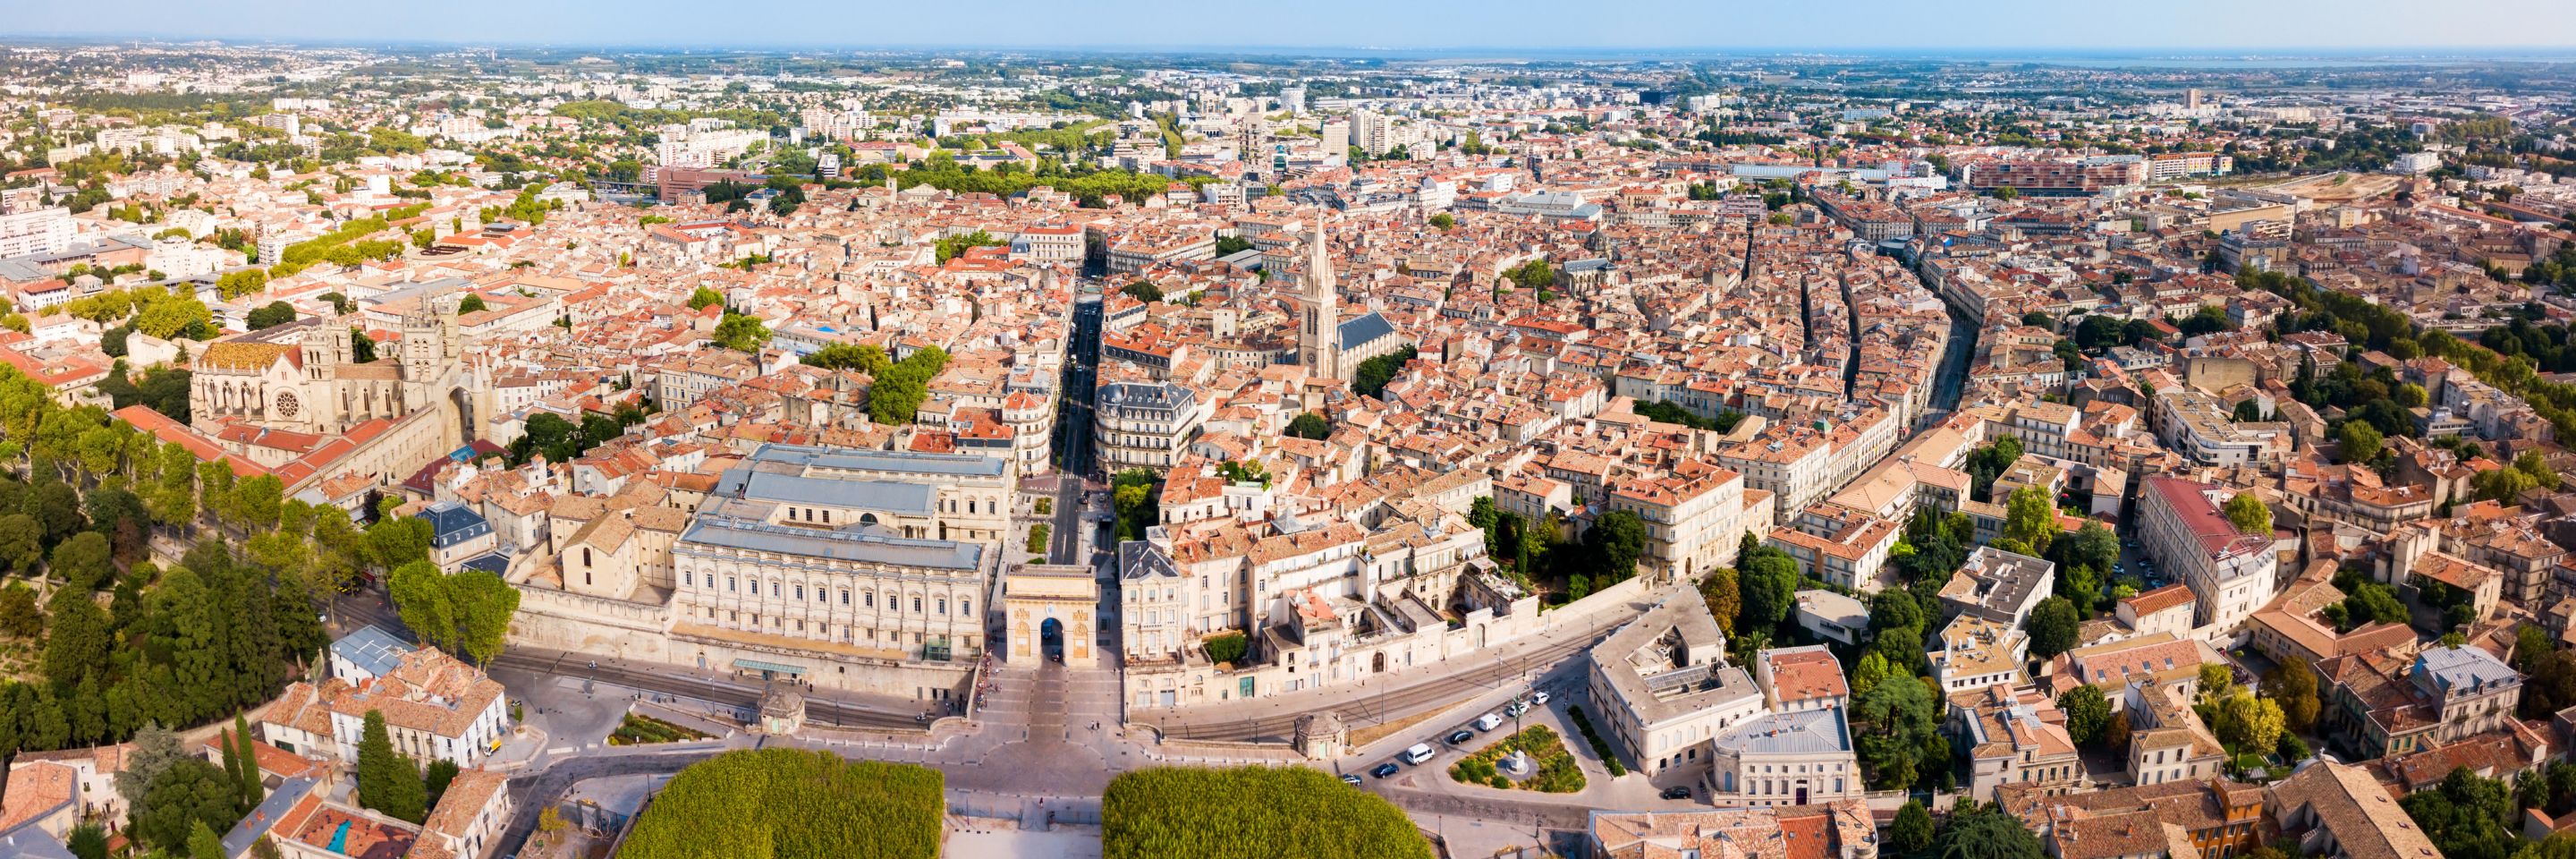 Montpellier Panorama sur les Grands Projets urbains BNPPRE